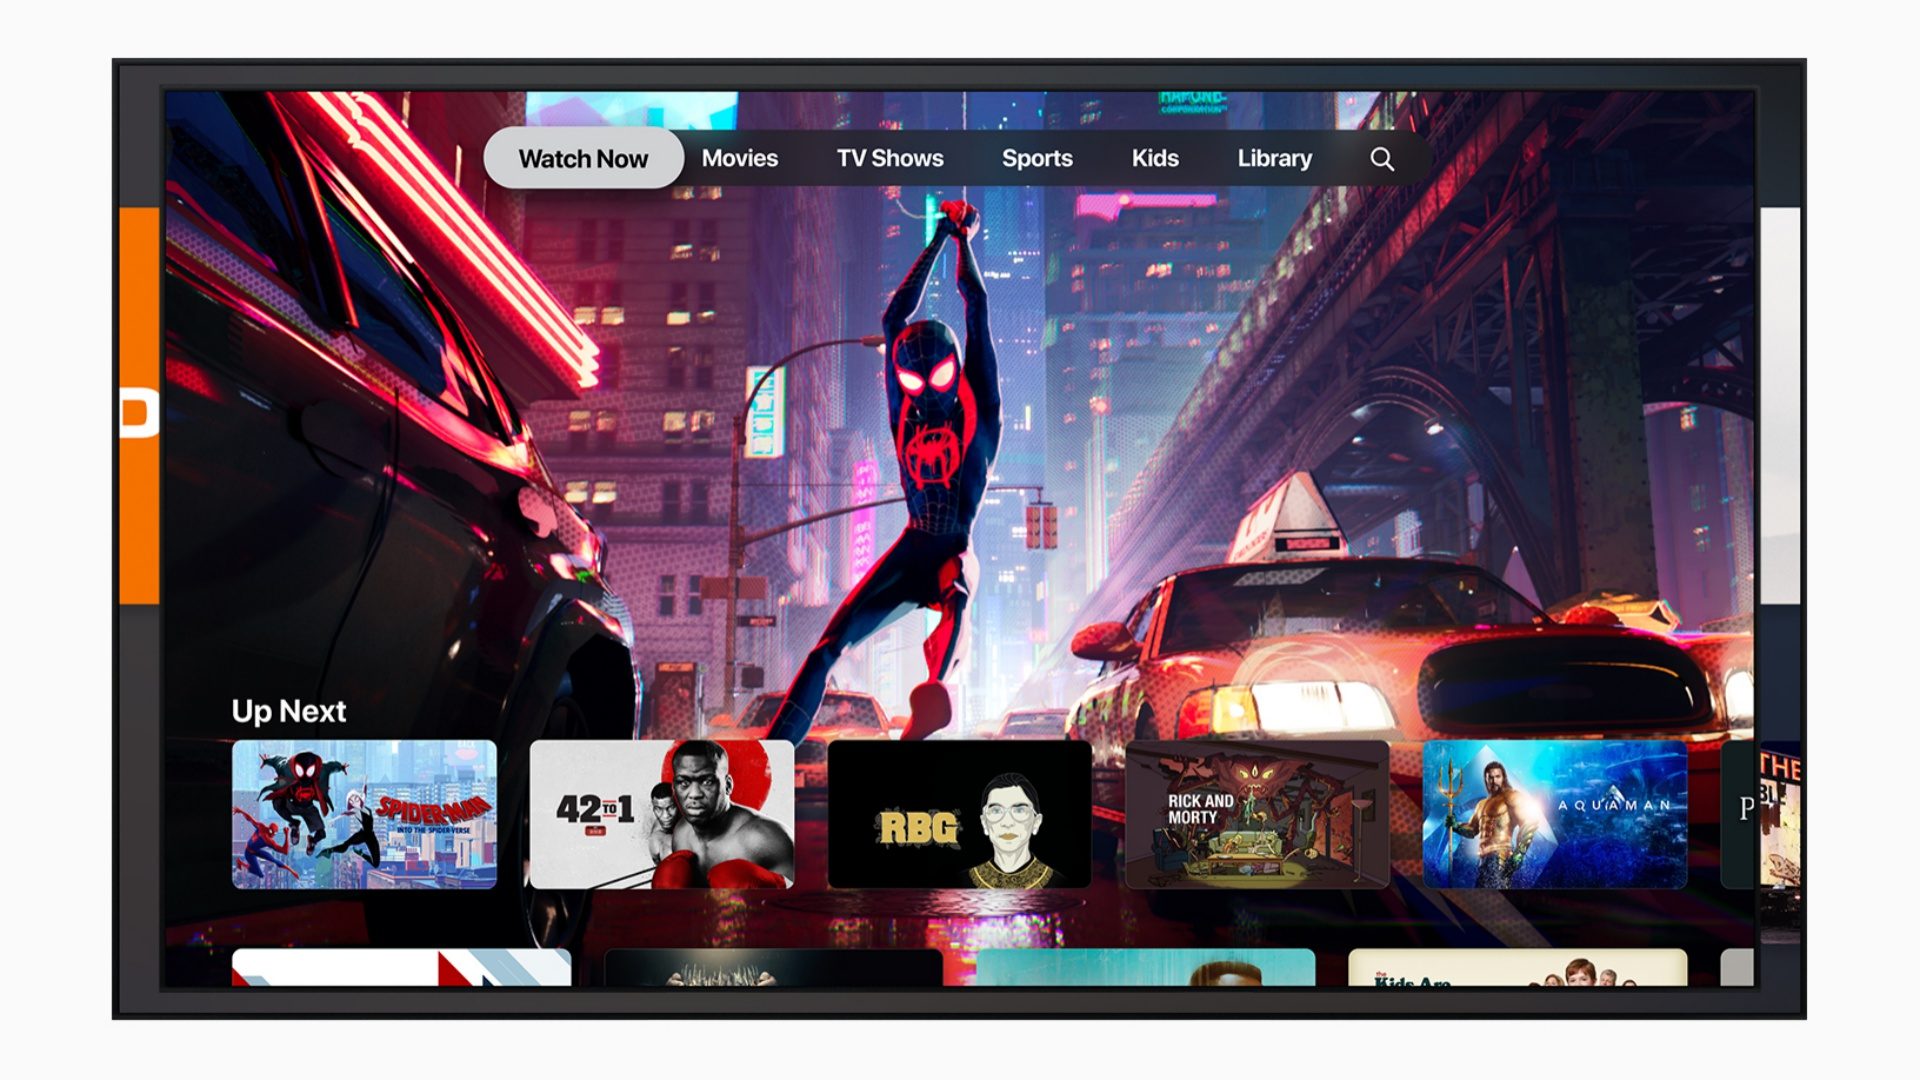 Apple TV Plus filmleri ilk önce sinemalarda gösterilebilir